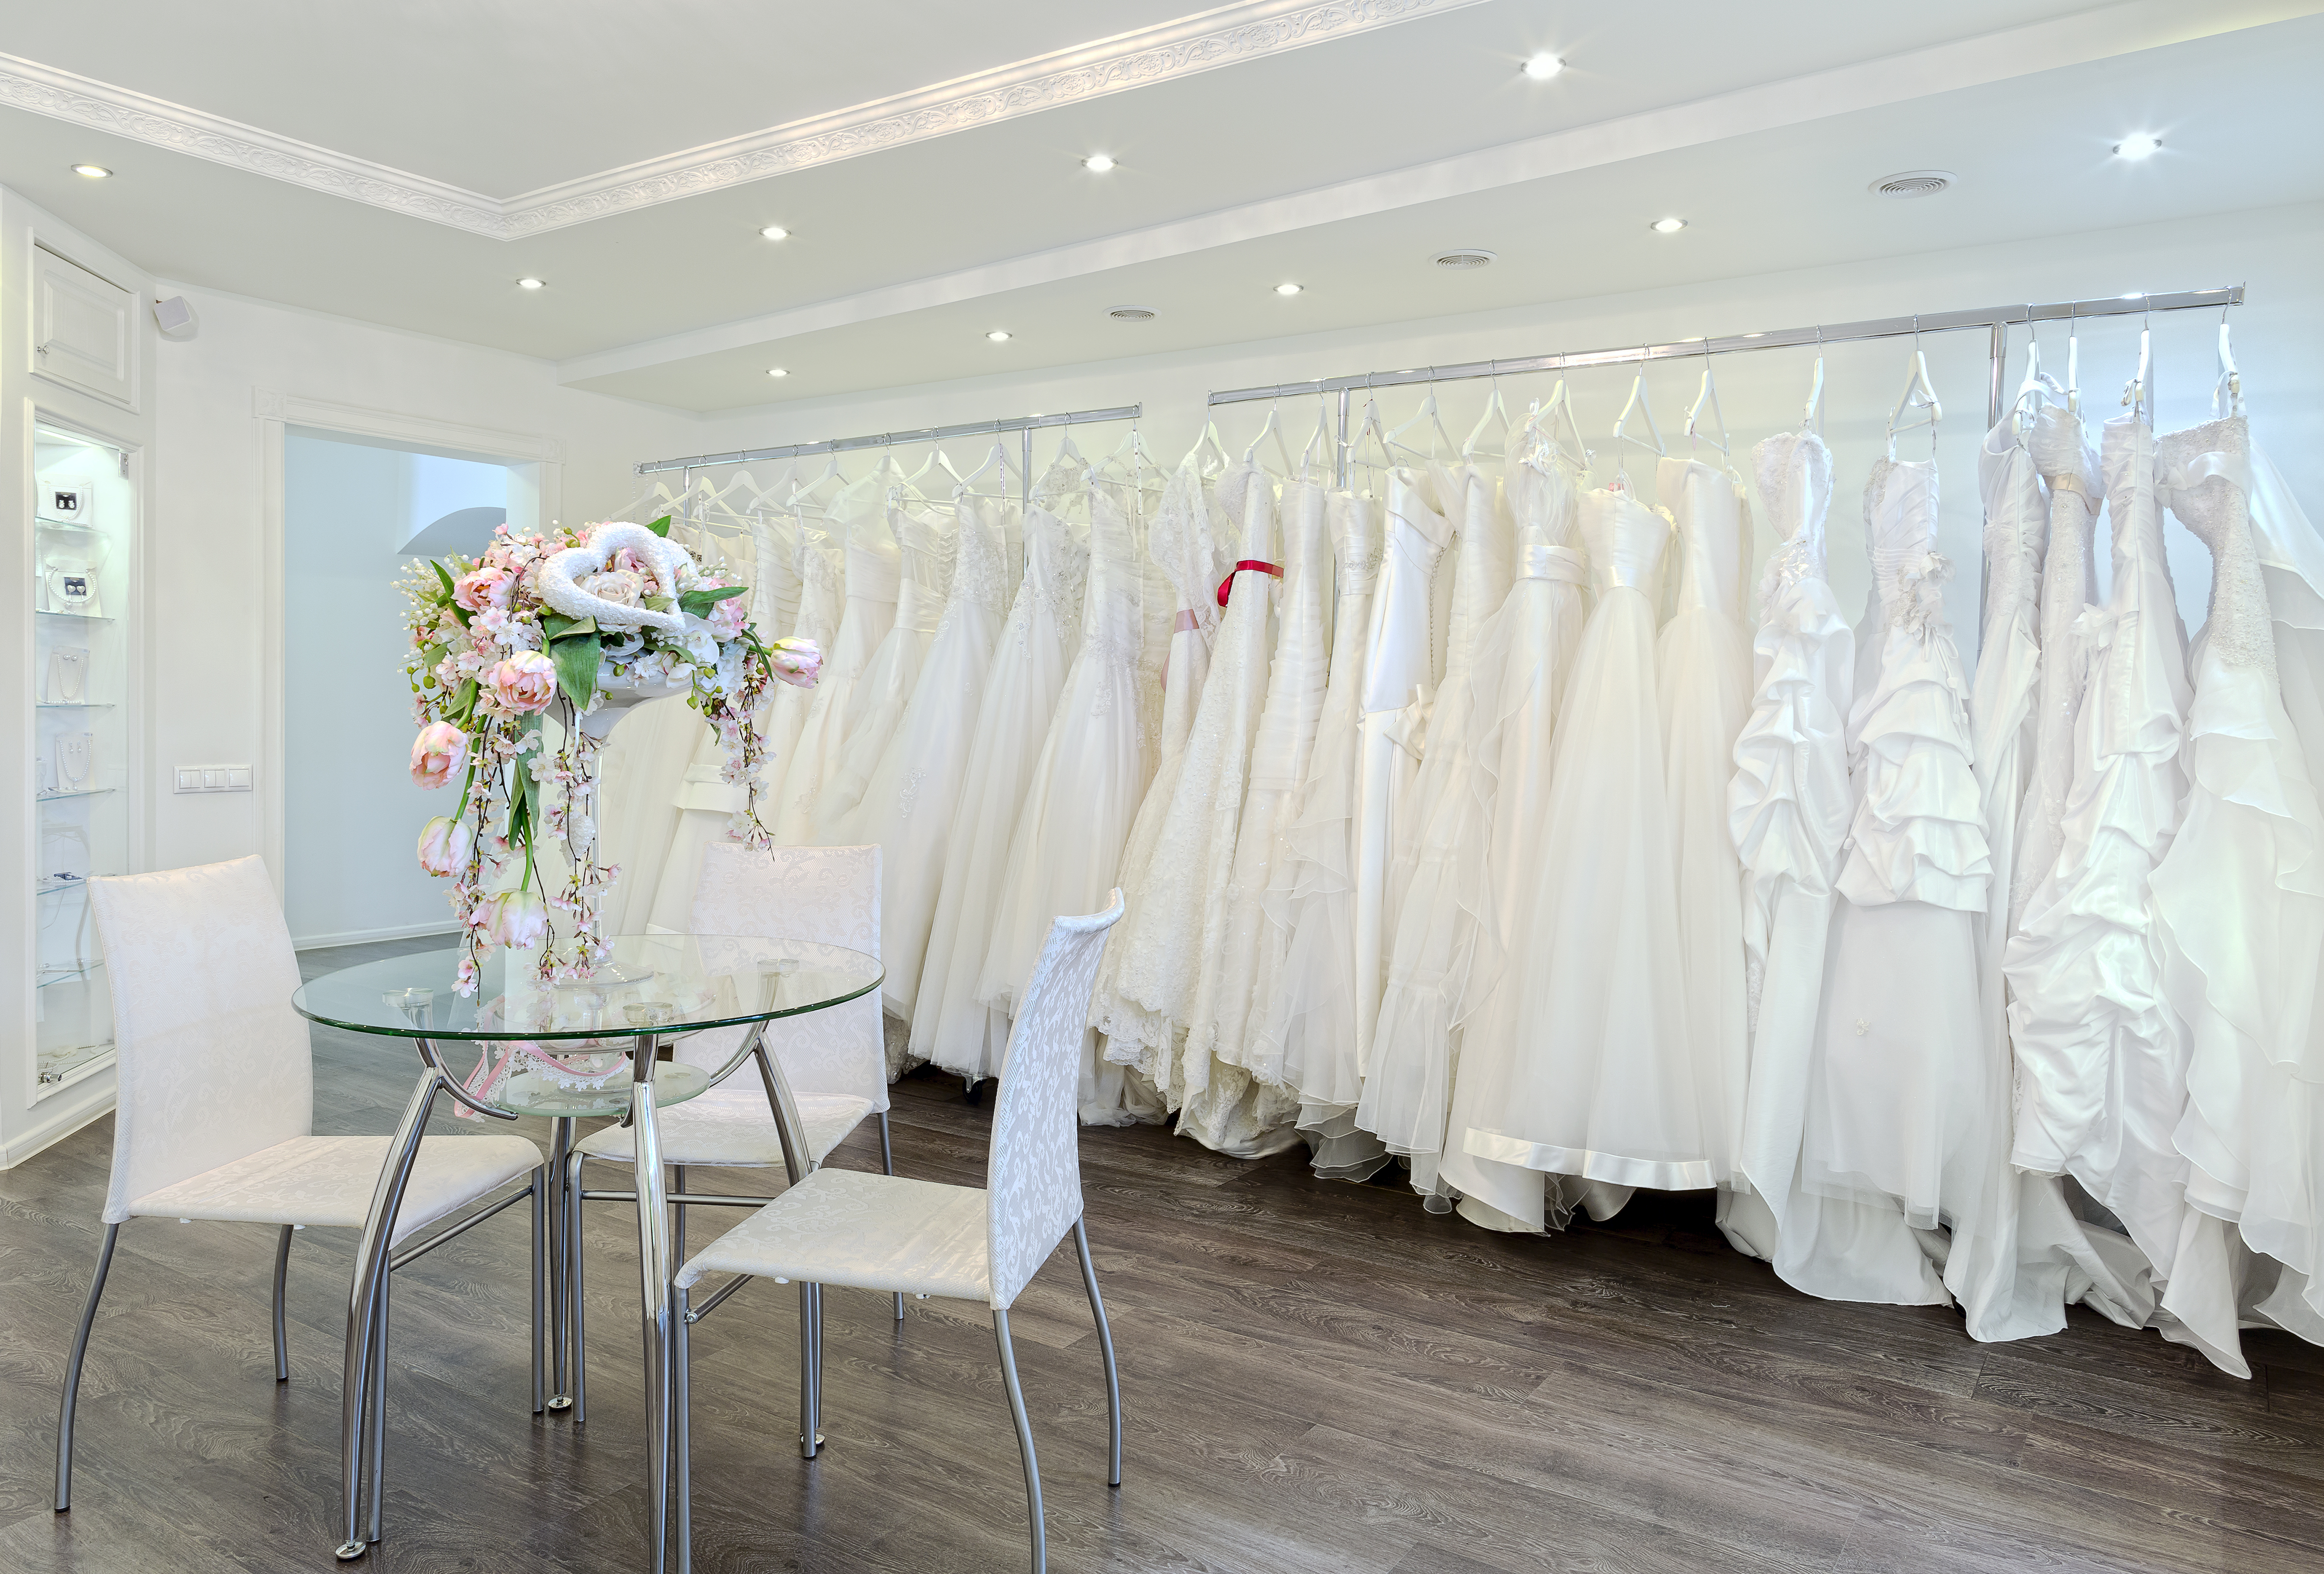 Une boutique de mariage | Source : Shutterstock